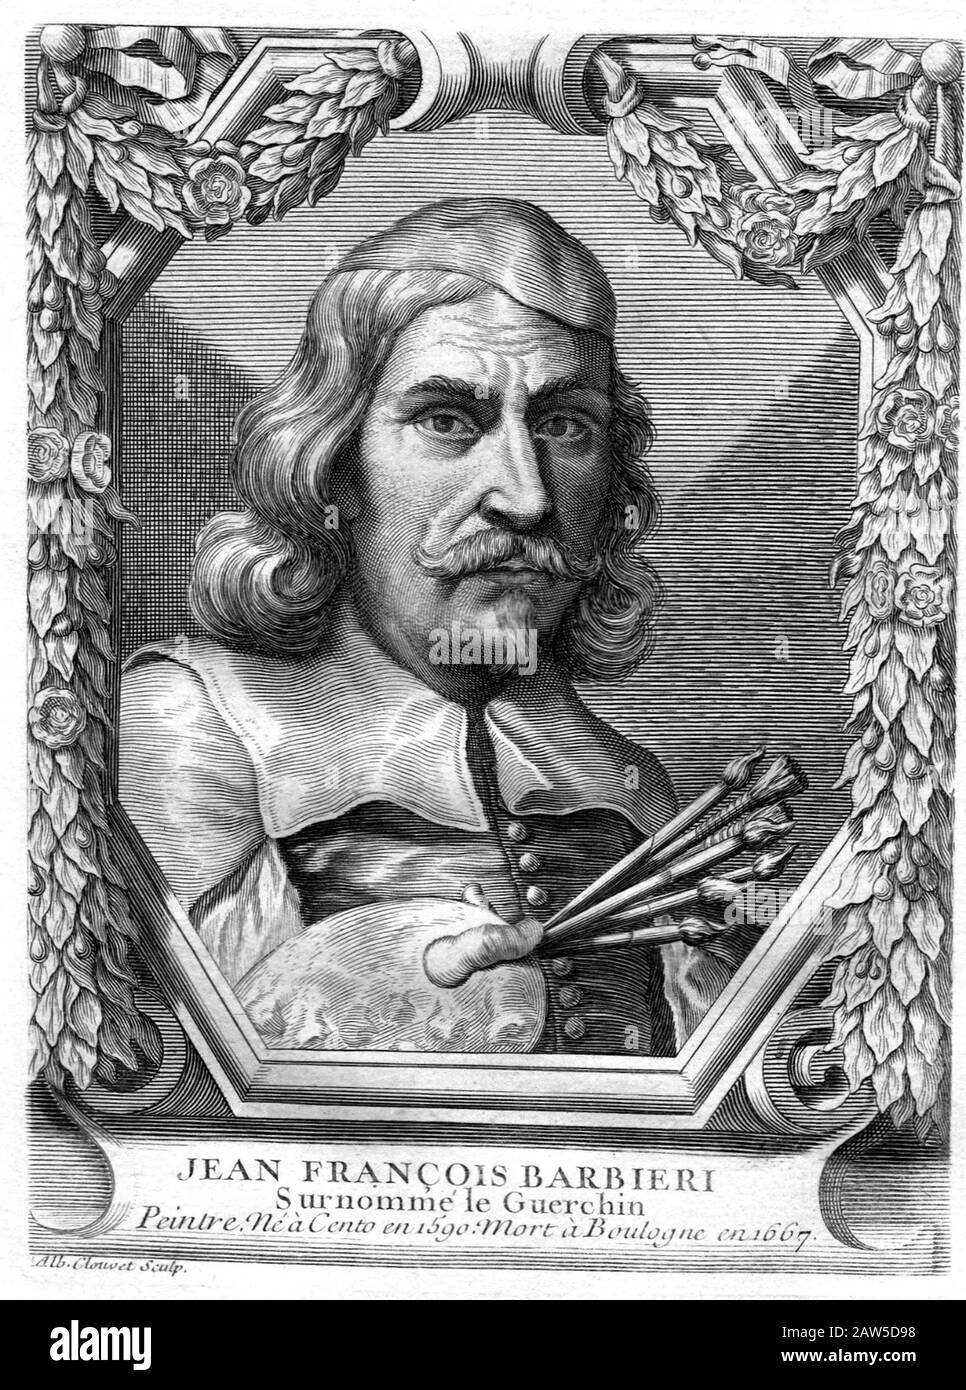 1670 Ca, ITALIEN : Der italienische Maler des Barock GIOVANNI FRANCESCO BARBIERI alias IL GUERCINO (* 1591 in Rom; † 1666 in Rom). Graviertes französisches Porträt aus XVIII Centur Stockfoto